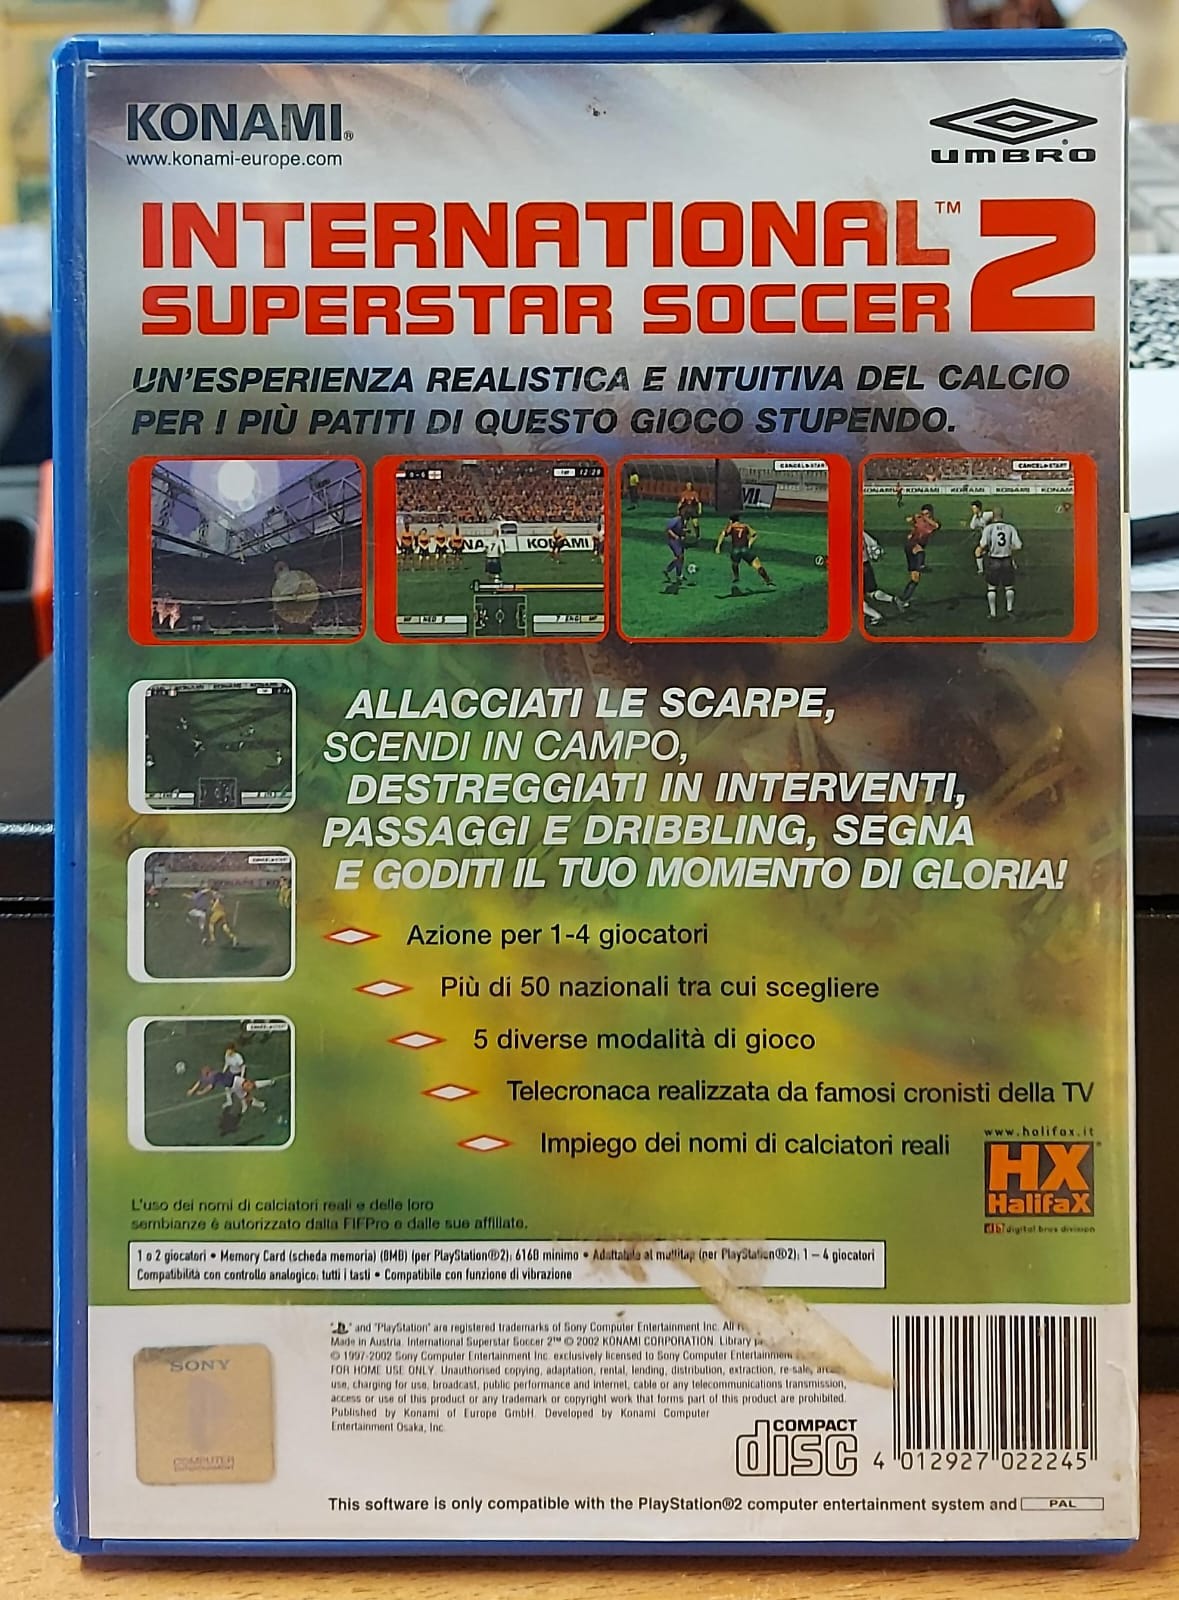 INTERNATIONAL SUPERSTAR SOCCER 2